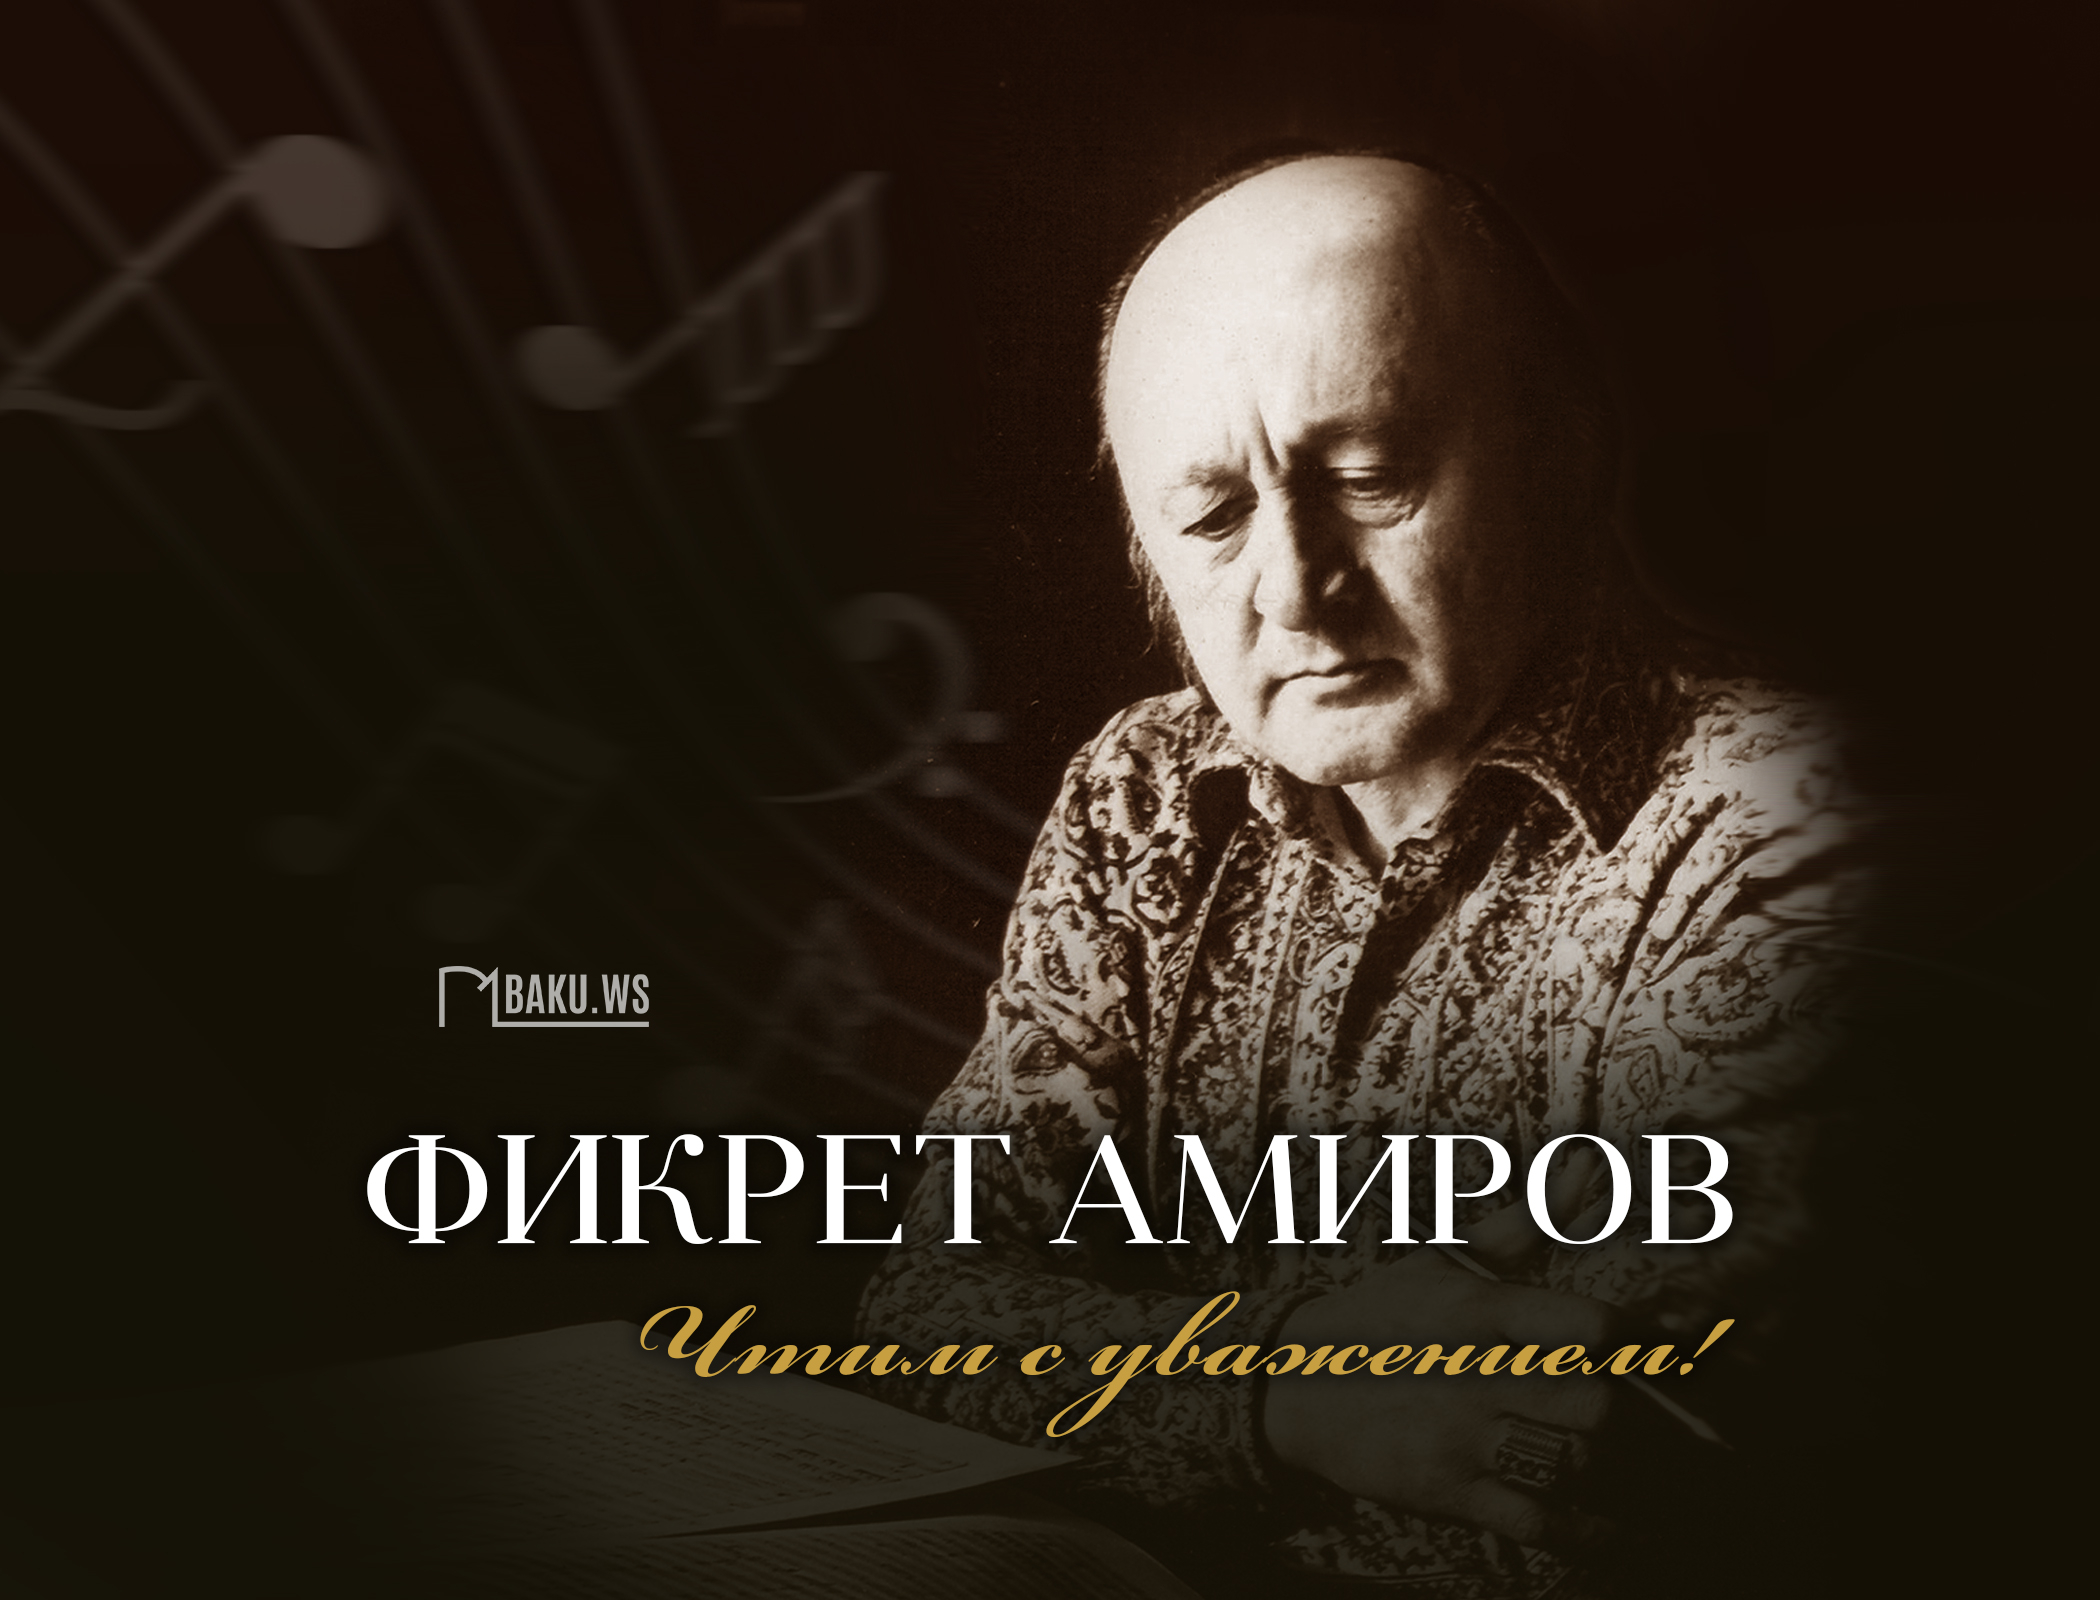 Сегодня день памяти Фикрета Амирова